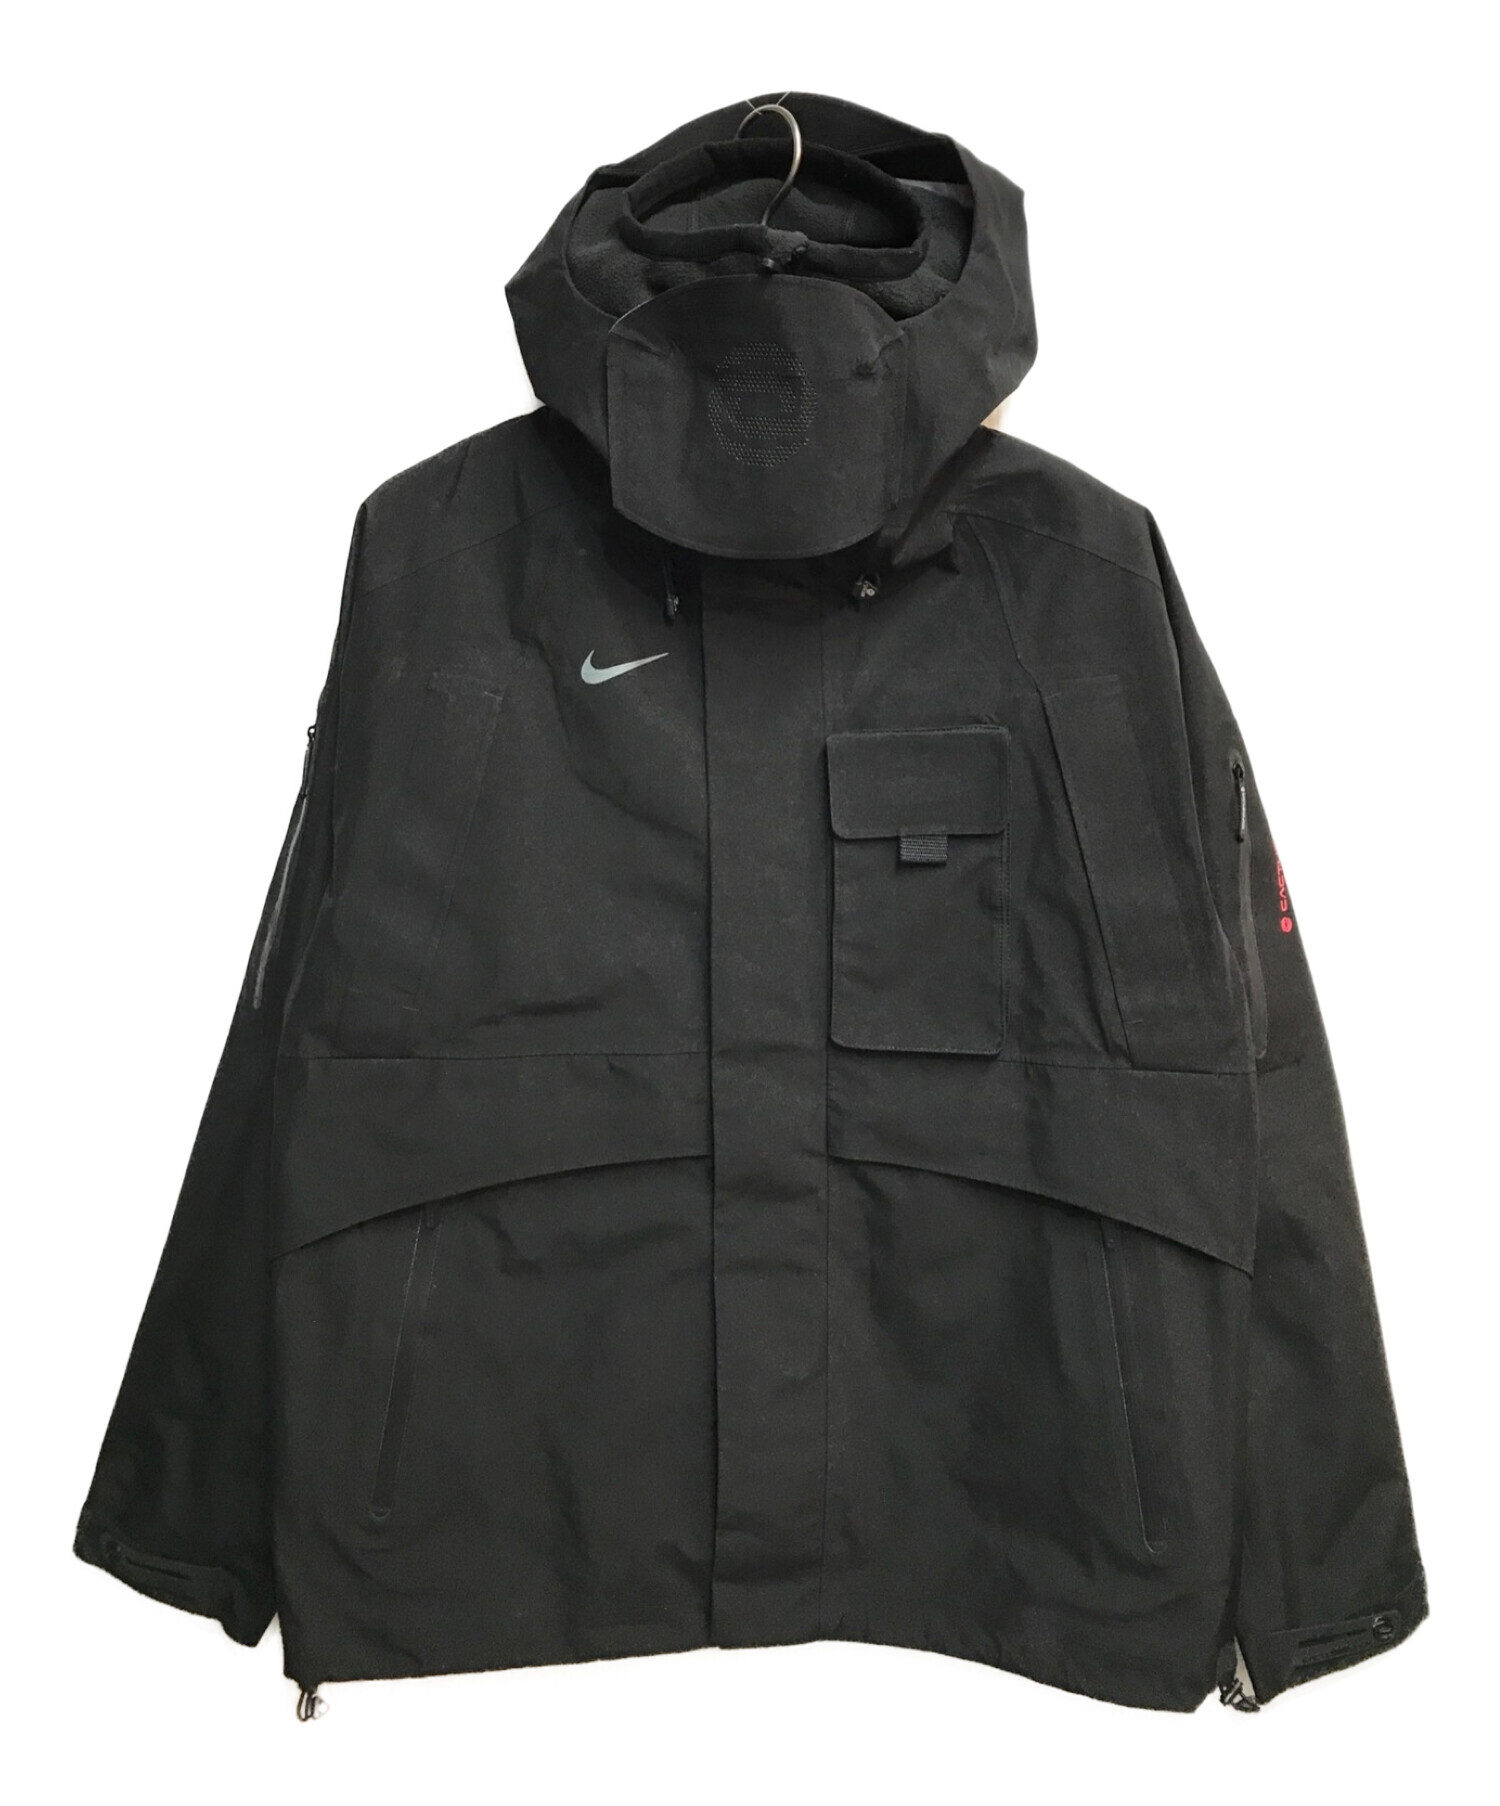 Nike CACT.US CORP Men's Jacket Black